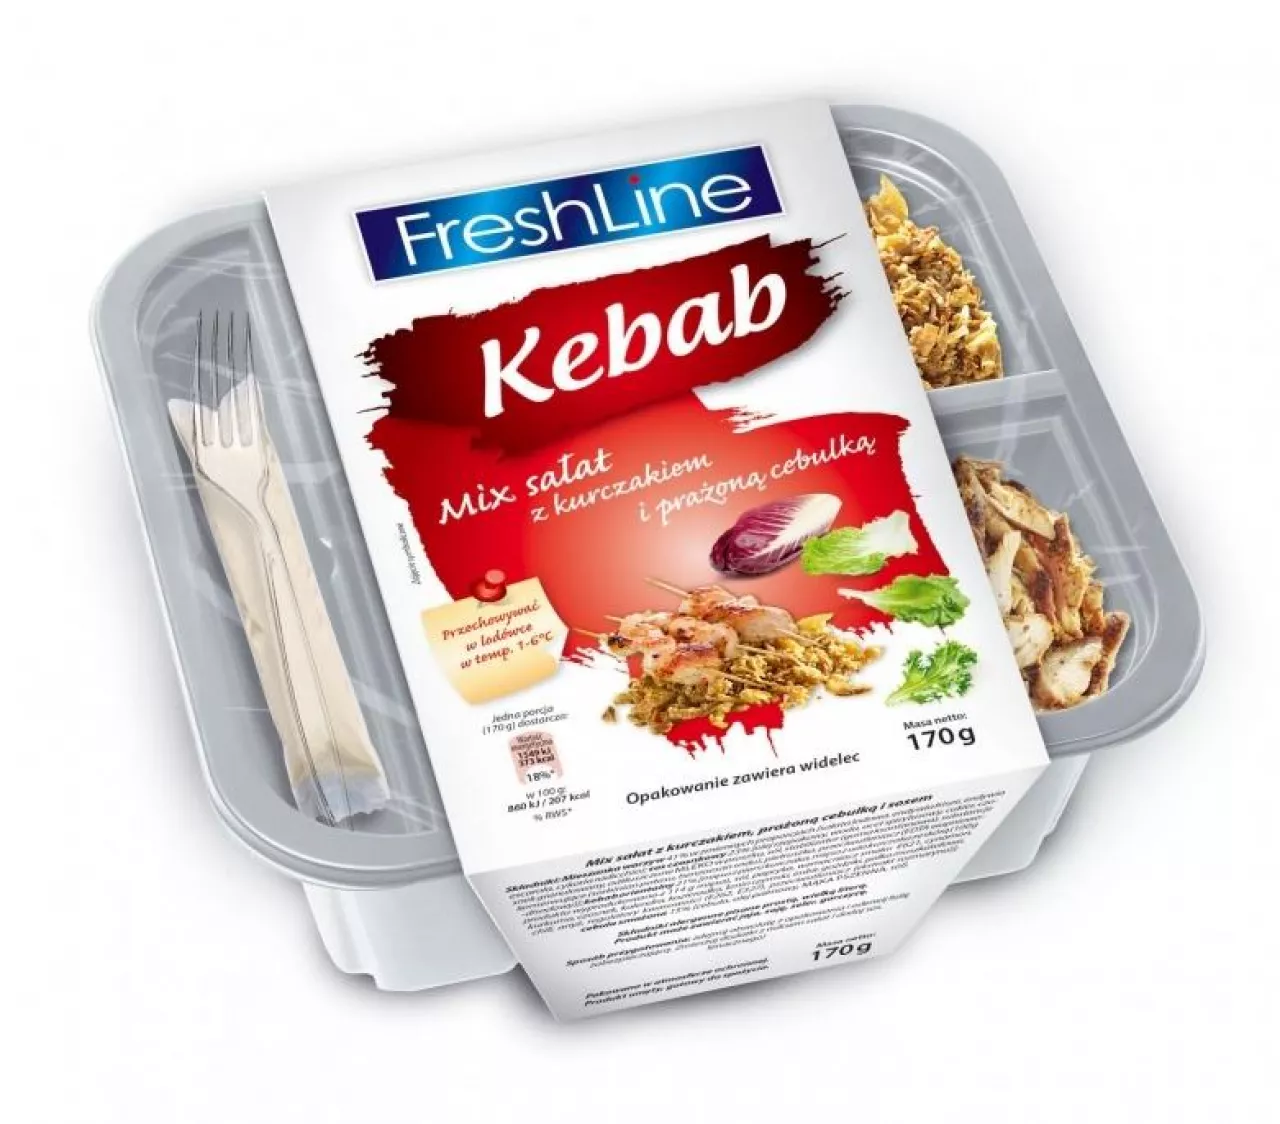 FreshLine - LunchBox Grecki (fot. materiały prasowe)